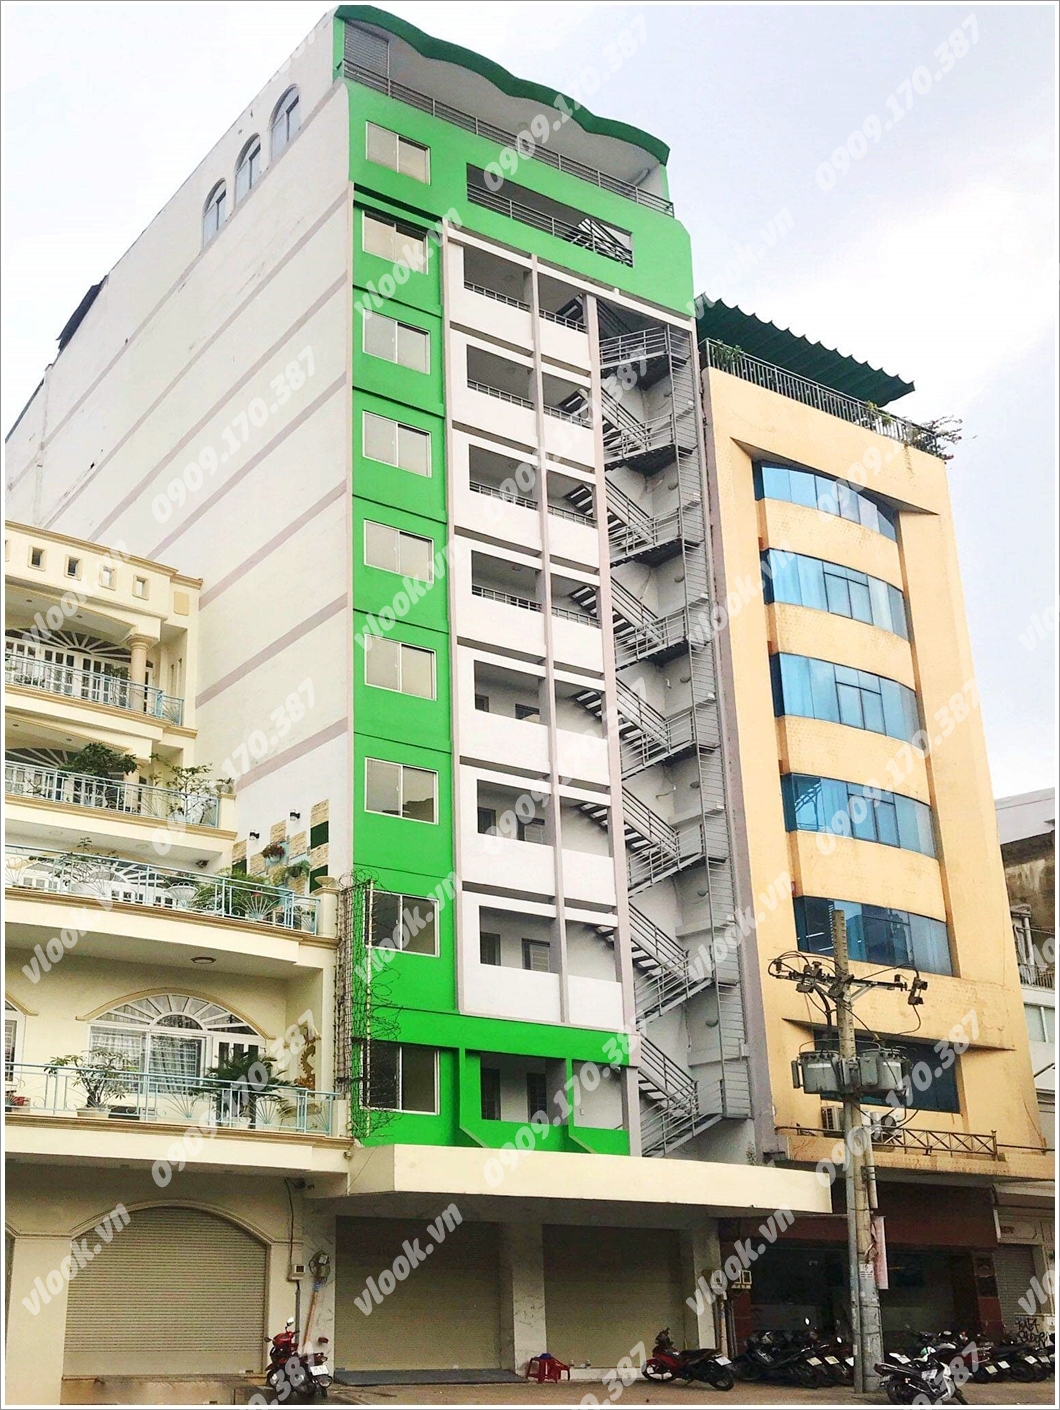 Cao ốc cho thuê văn phòng FPA Tower, Điện Biên Phủ, Quận 3 - vlook.vn